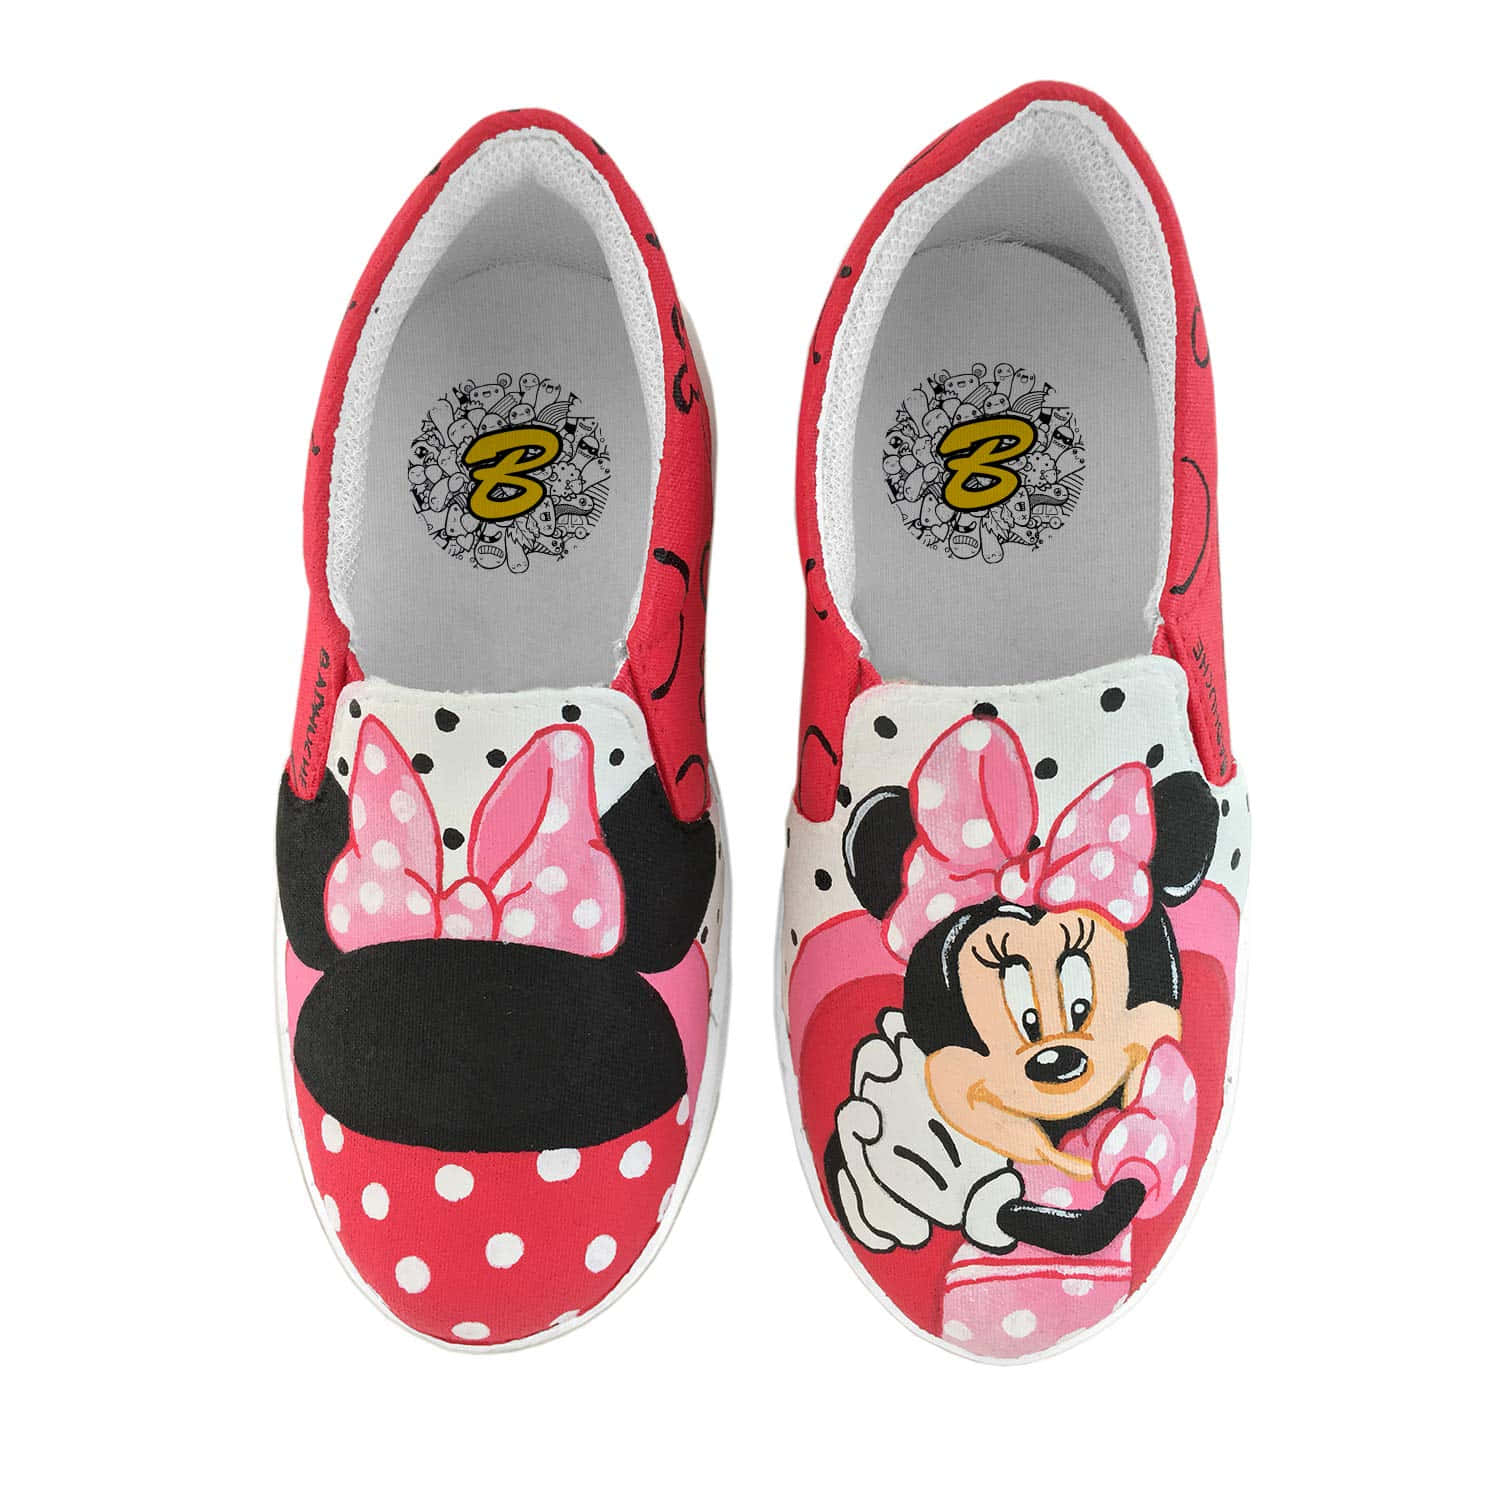 Zapatossin Cordones De Minnie Mouse